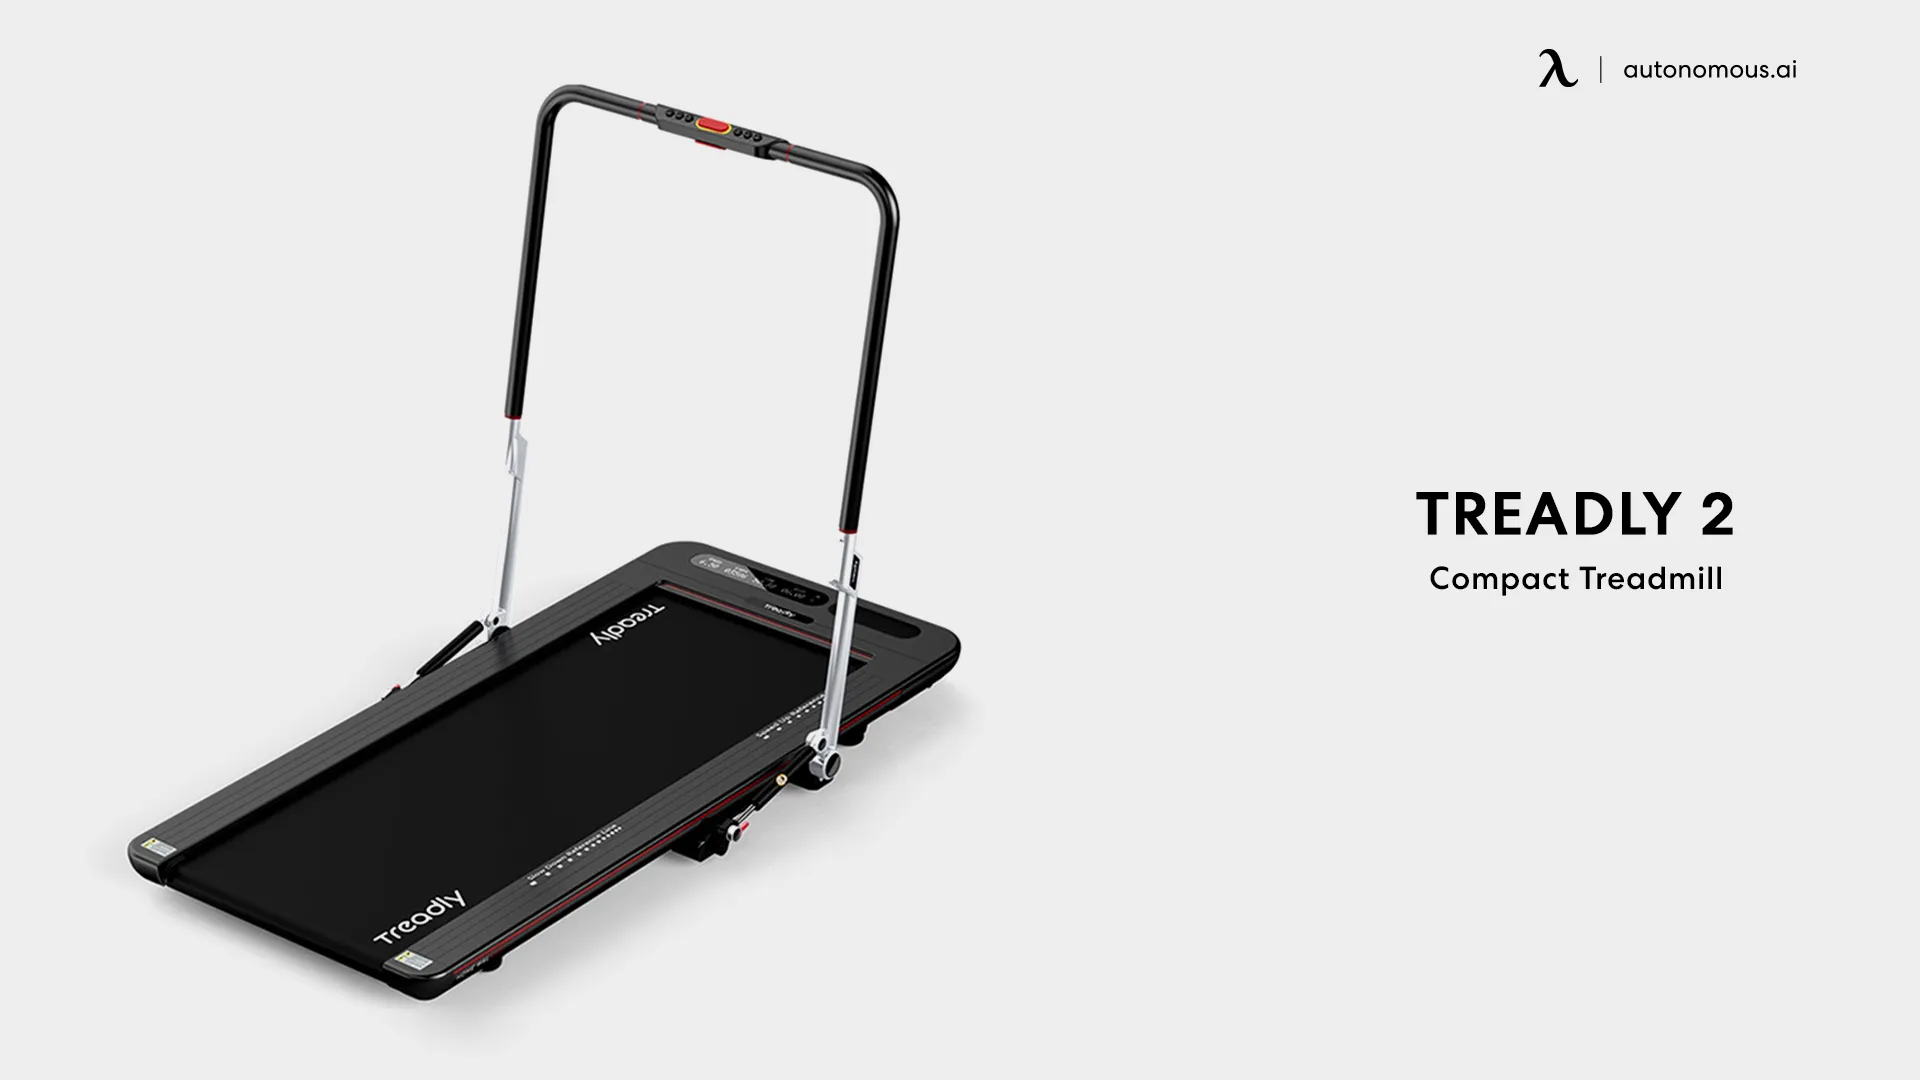 Compact Treadmill Treadly 2